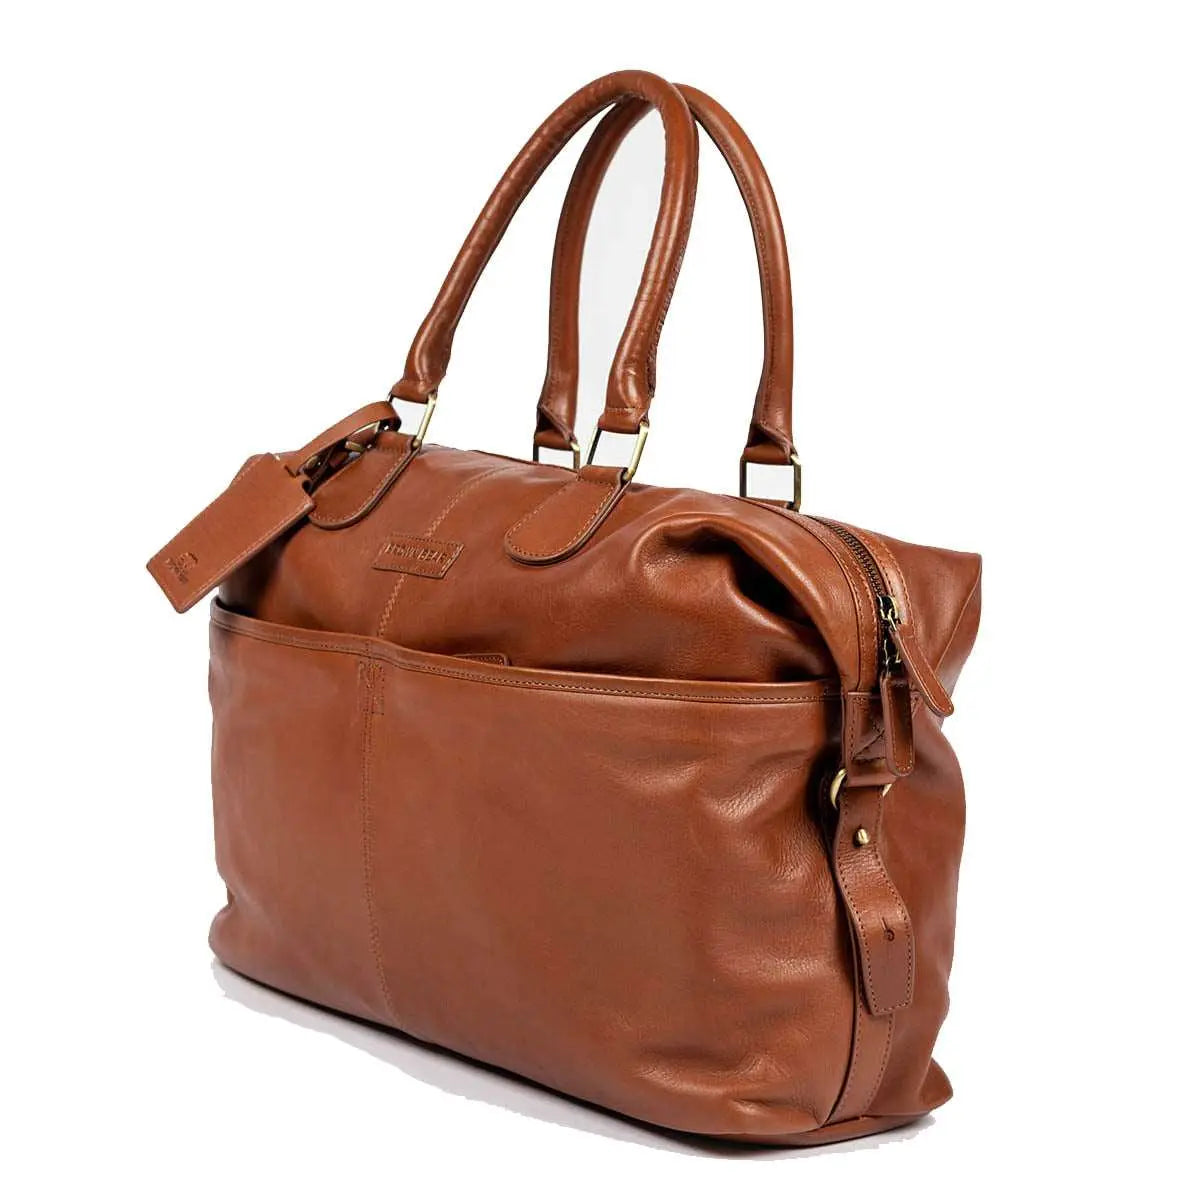 Genuine Leather Weekender Bag for Short Duration Getaways - Brown Bear